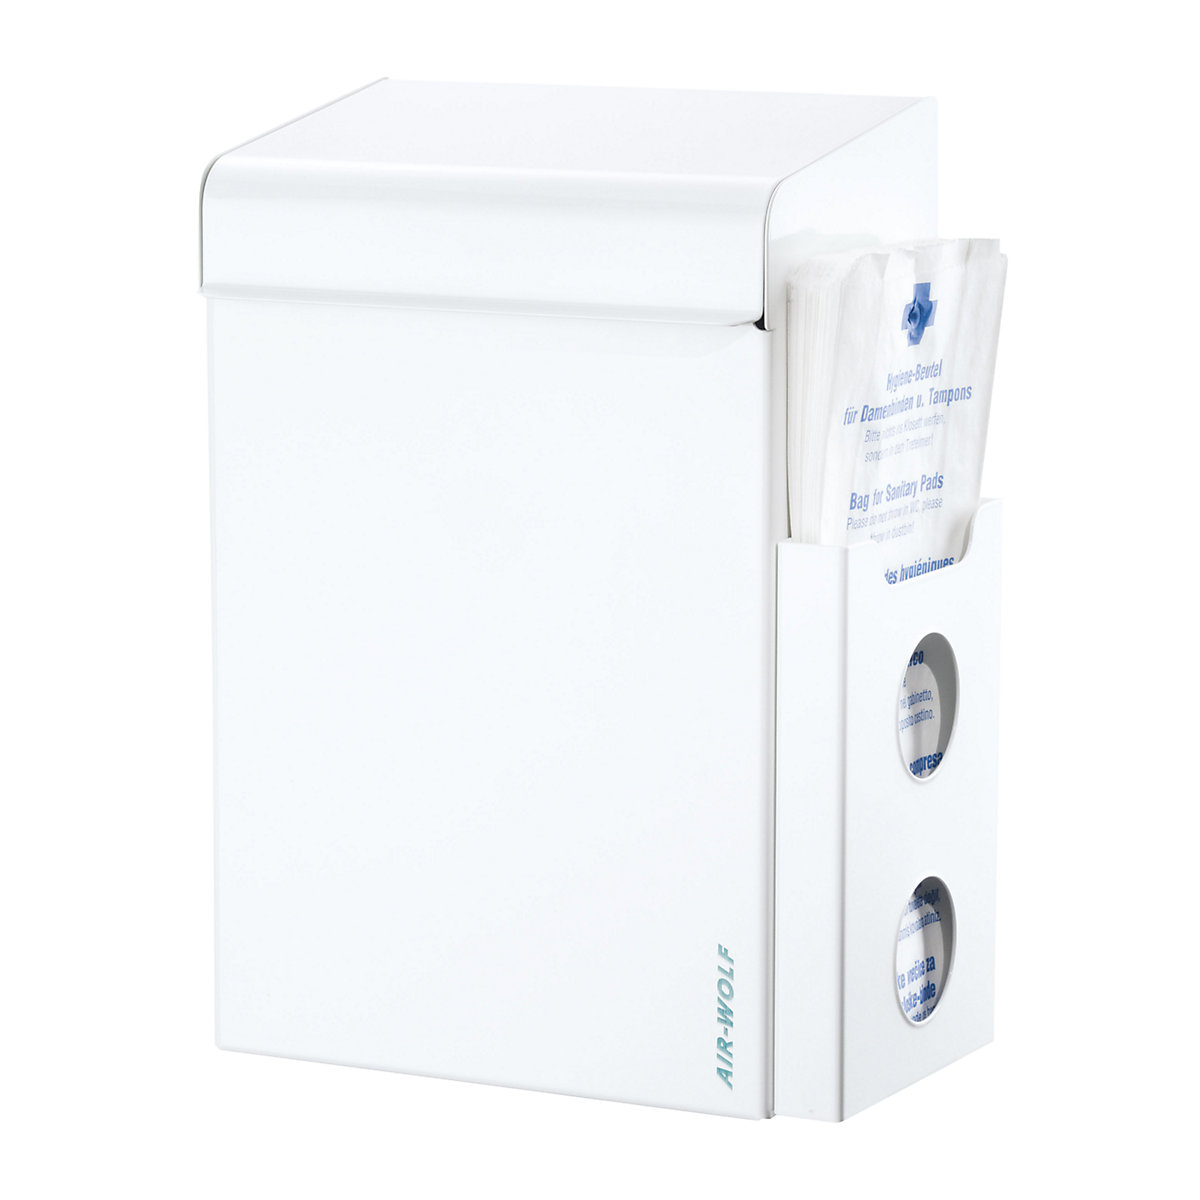 AIR-WOLF – Coletor de lixo para produtos de higiene com dispensador de sacos, volume 8 l, LxAxP 220 x 342 x 153 mm, aço inoxidável branco